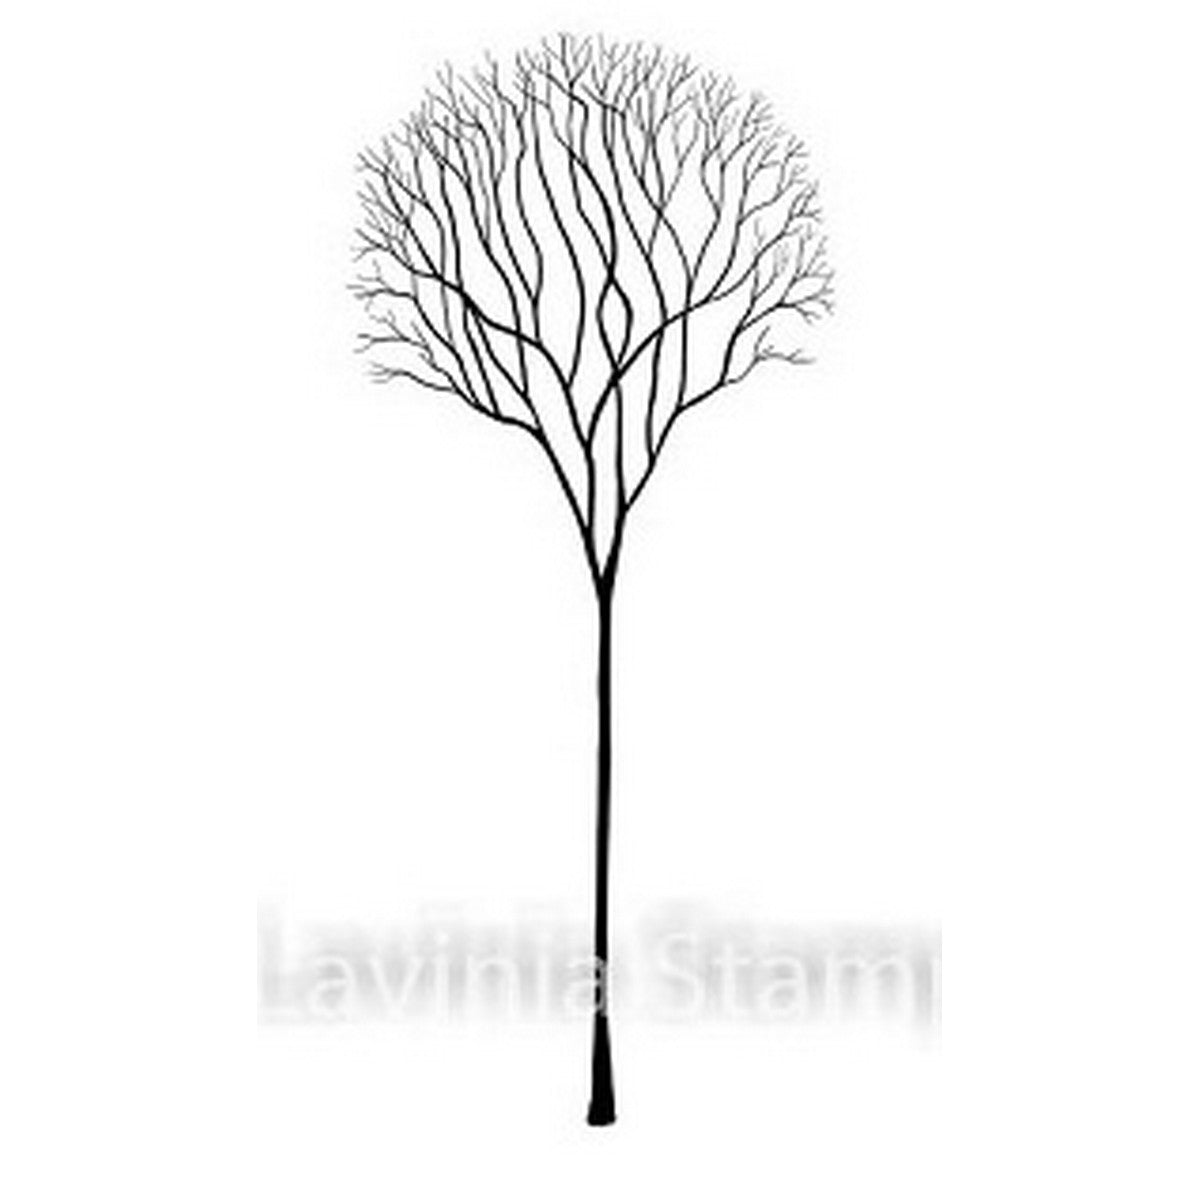 Lavinia Stamps - Skeleton Tree Scene (LAV532)